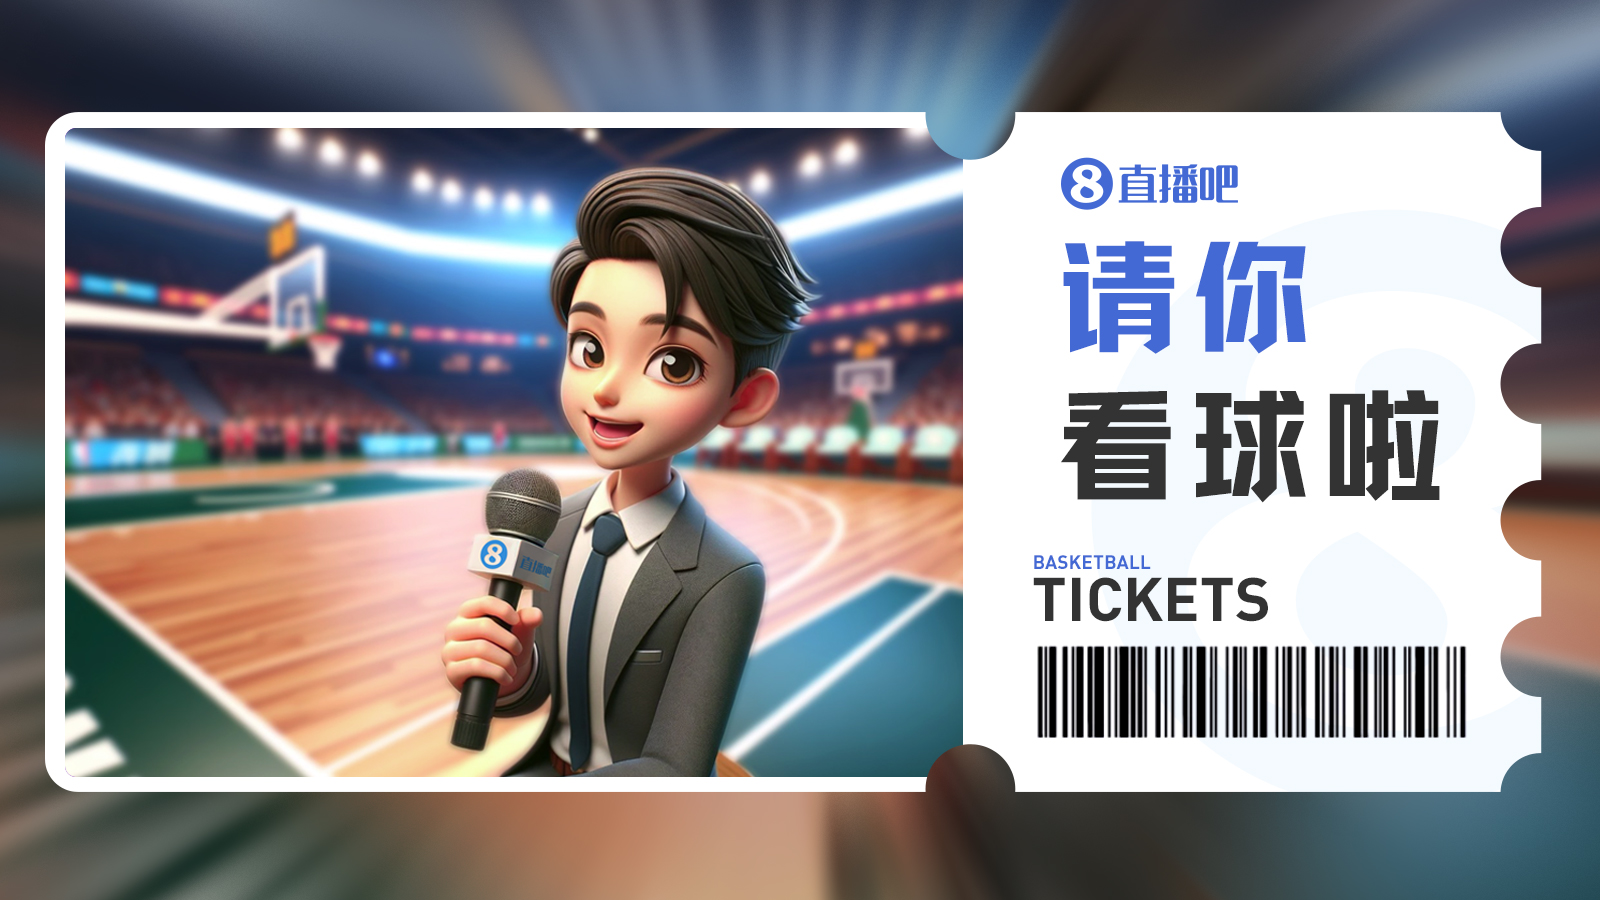 直播吧送CBA门票啦留言抽3月28日『上海vs新疆』免费门票